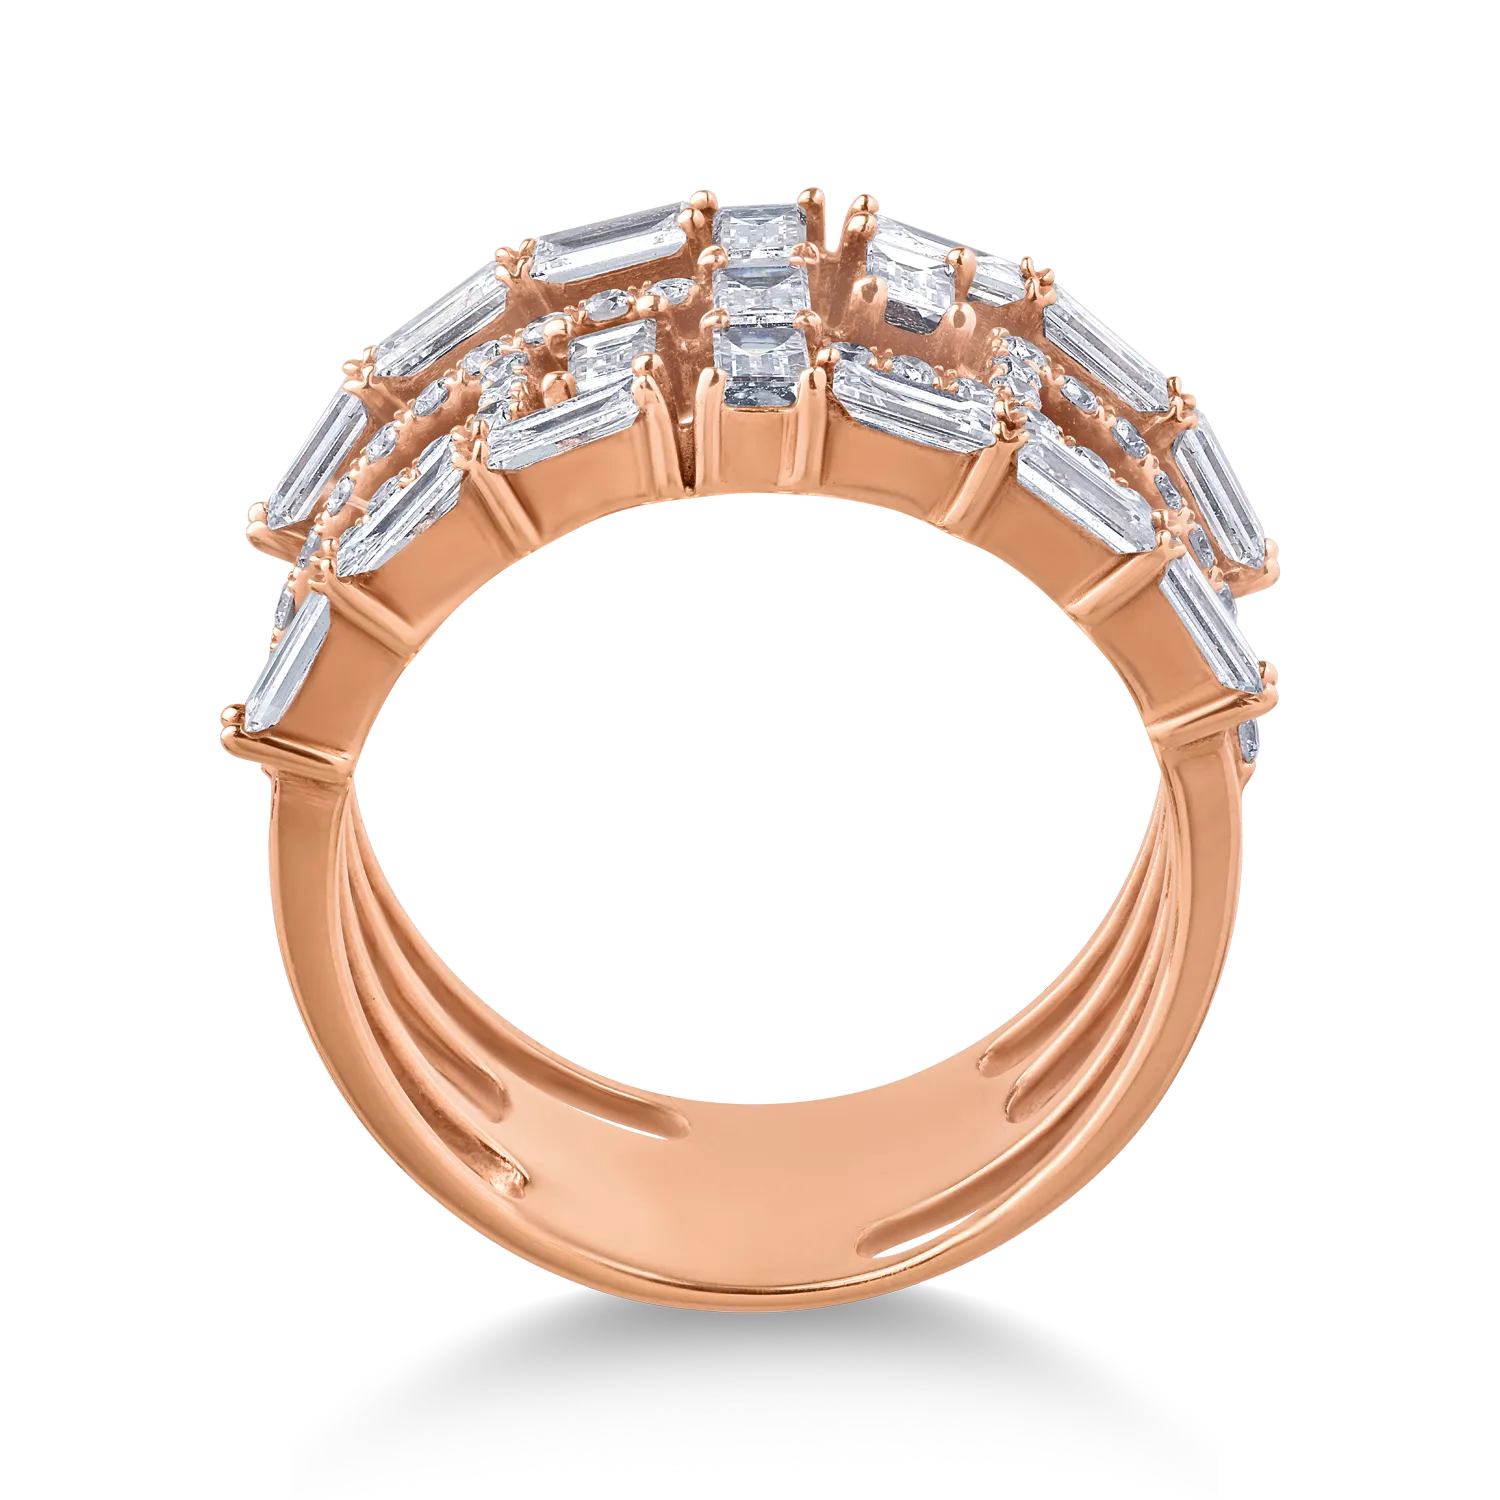 18K rózsaszín arany gyűrű 1.62ct gyémántokkal